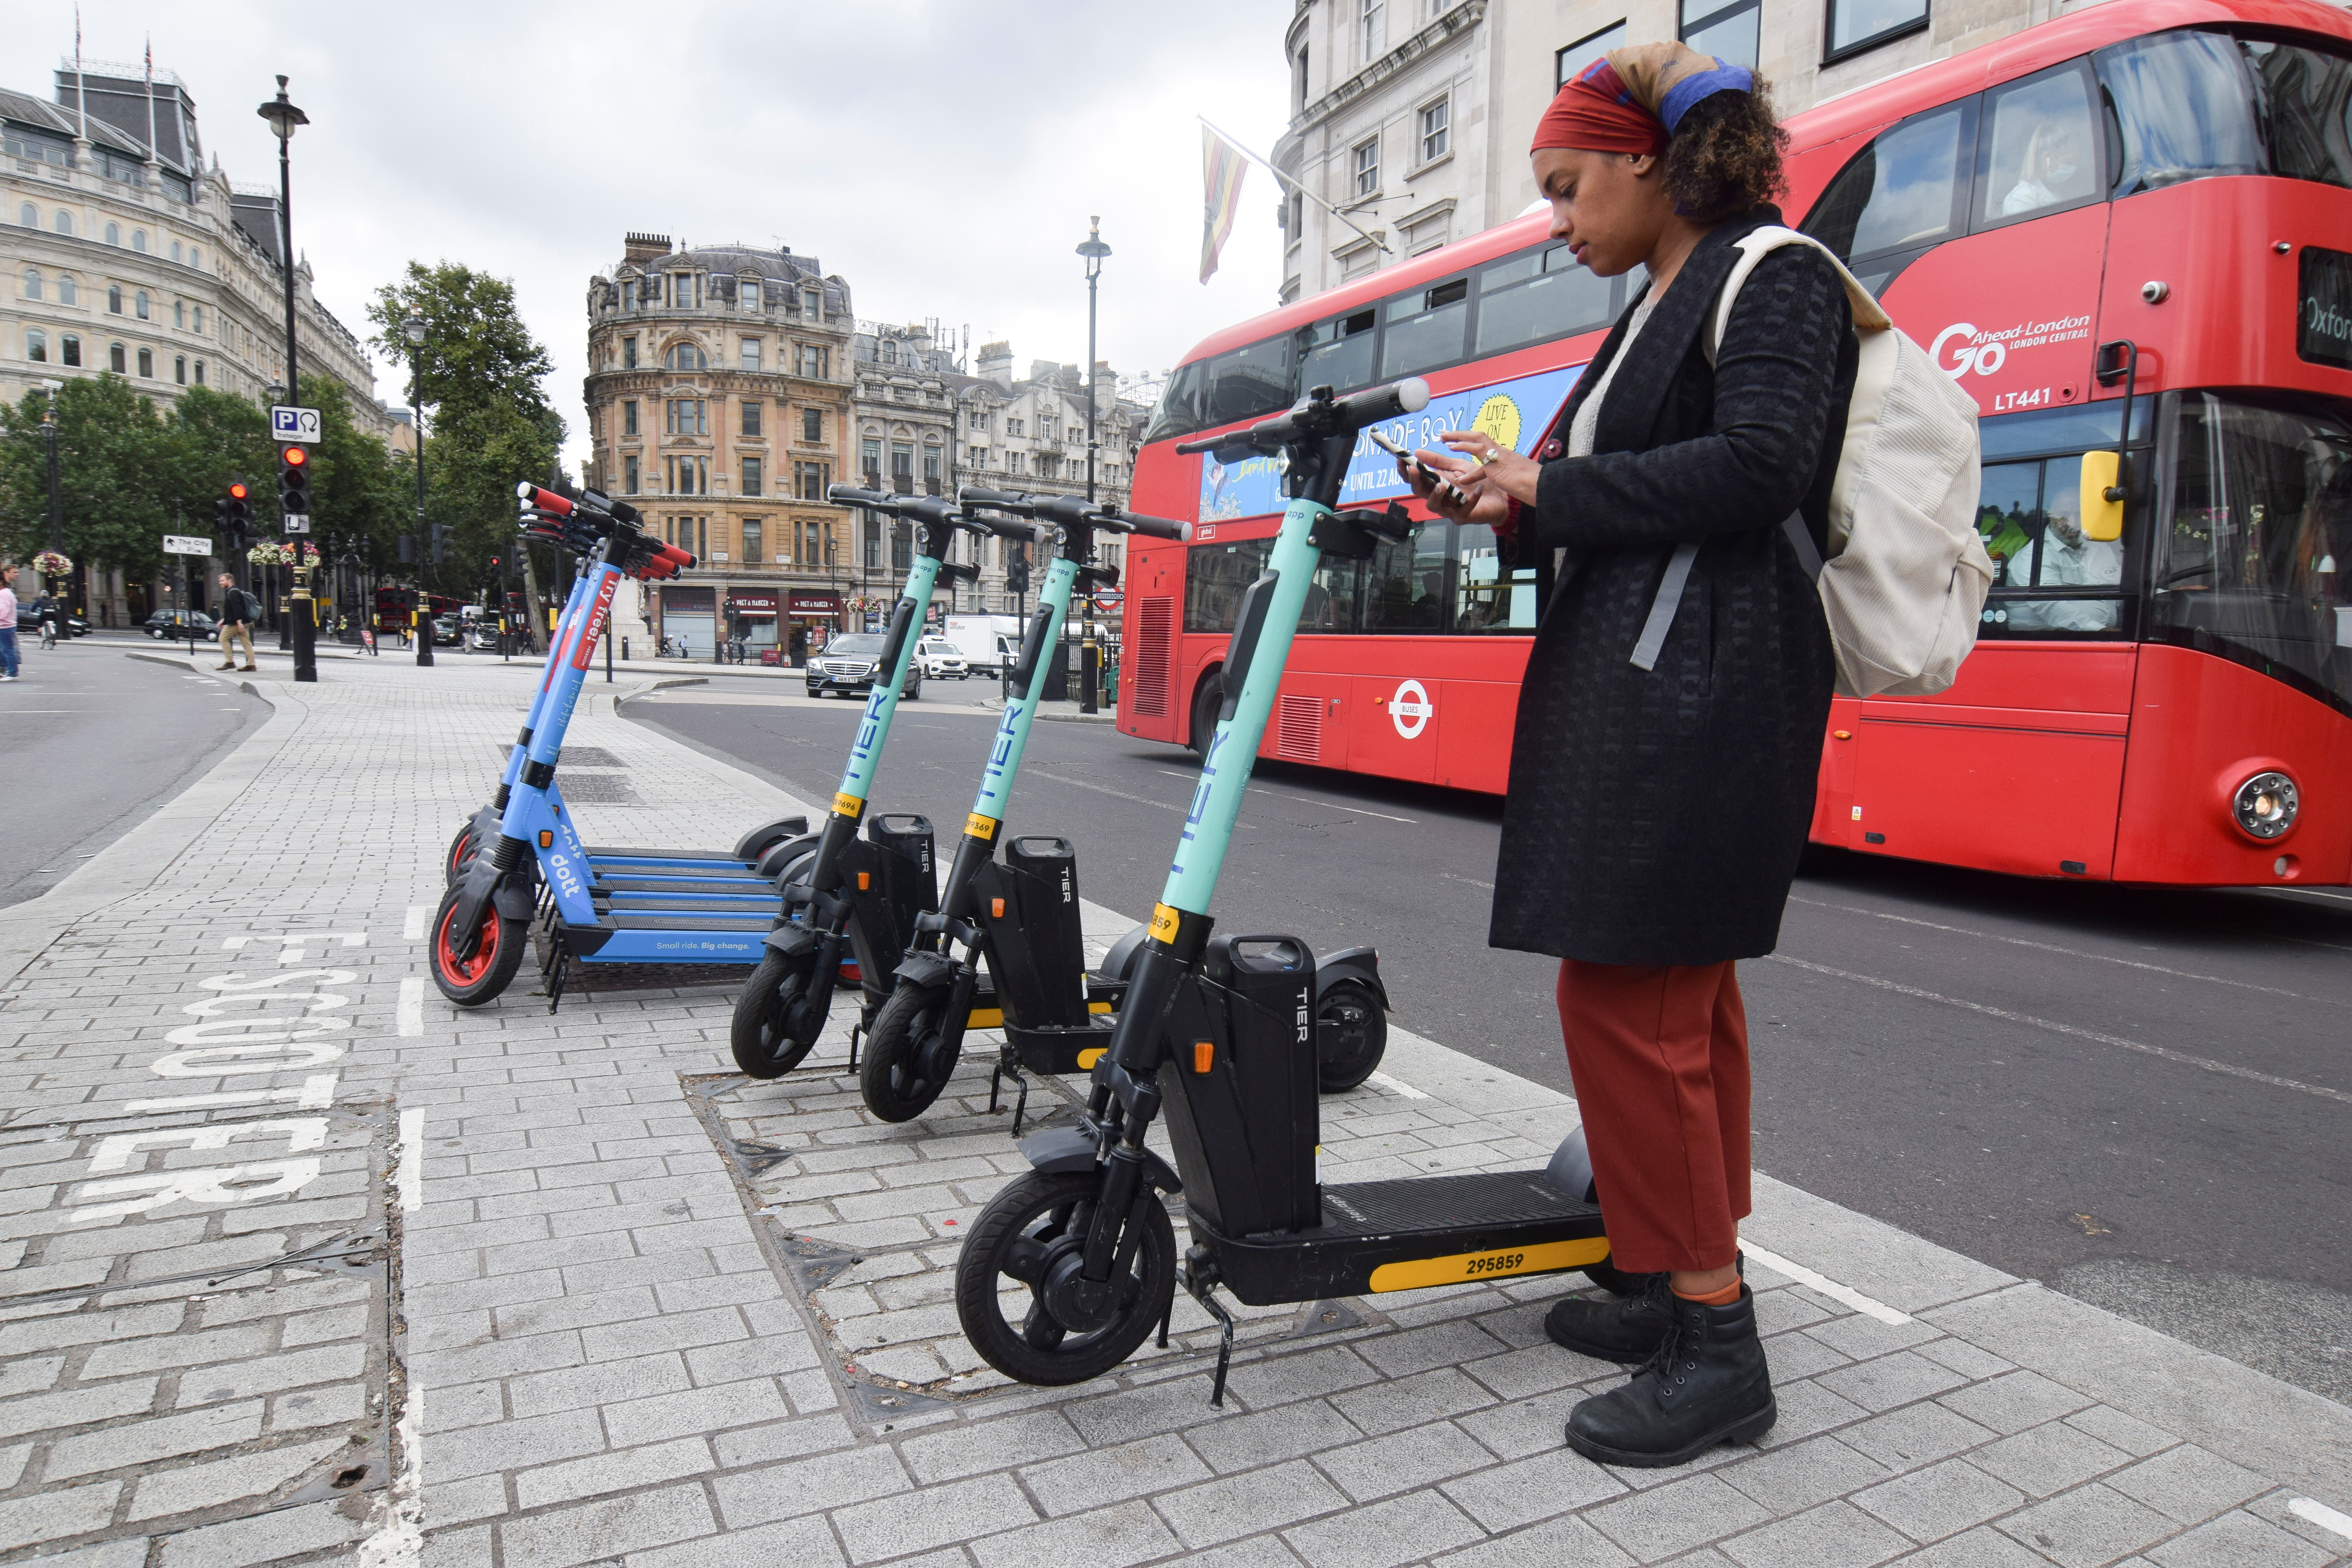 El scooter eléctrico ha ganado terreno como un medio de transporte alternativo en Europa pero ha causado accidentes asociados a poco sonido que hacen. REUTERS/Nick Carey